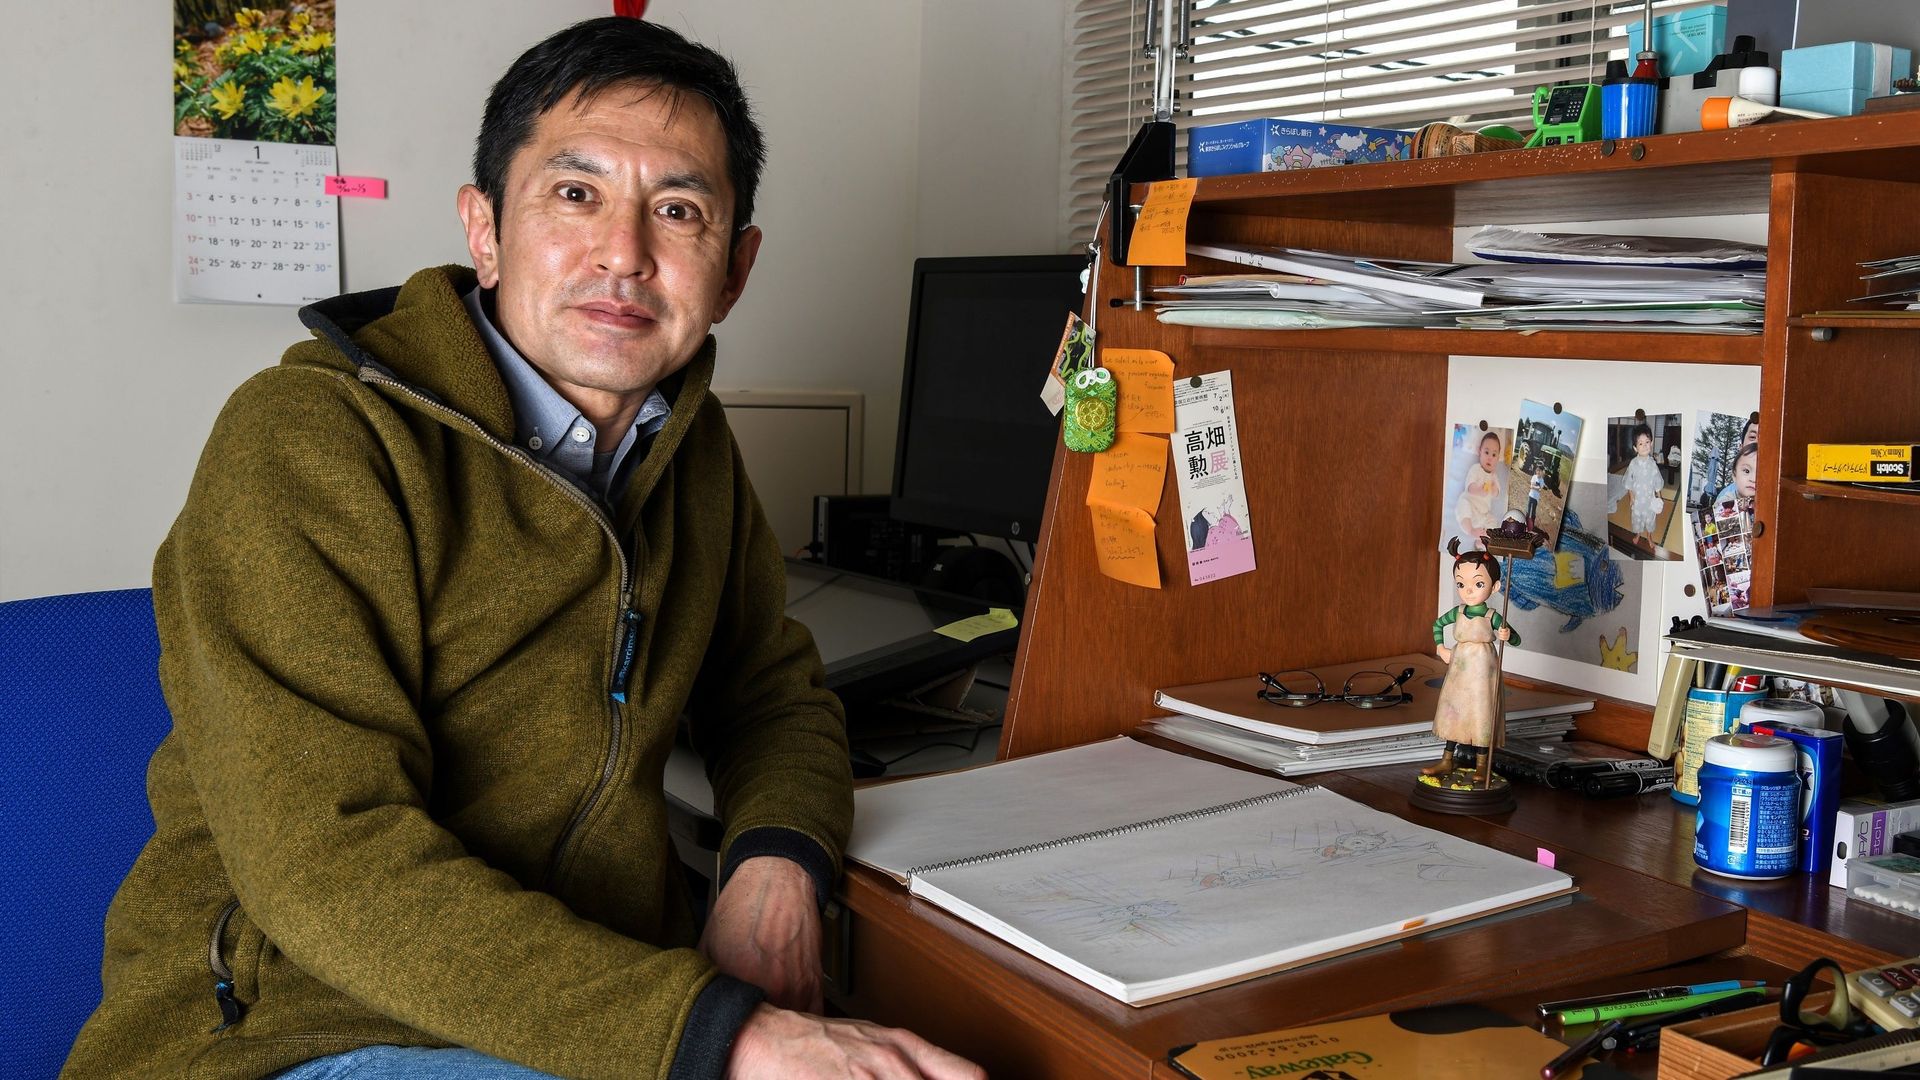 L'illustre studio Ghibli se risque à l'animation numérique, sous la direction de Goro, le fils du fondateur, Hayao Miyazaki.